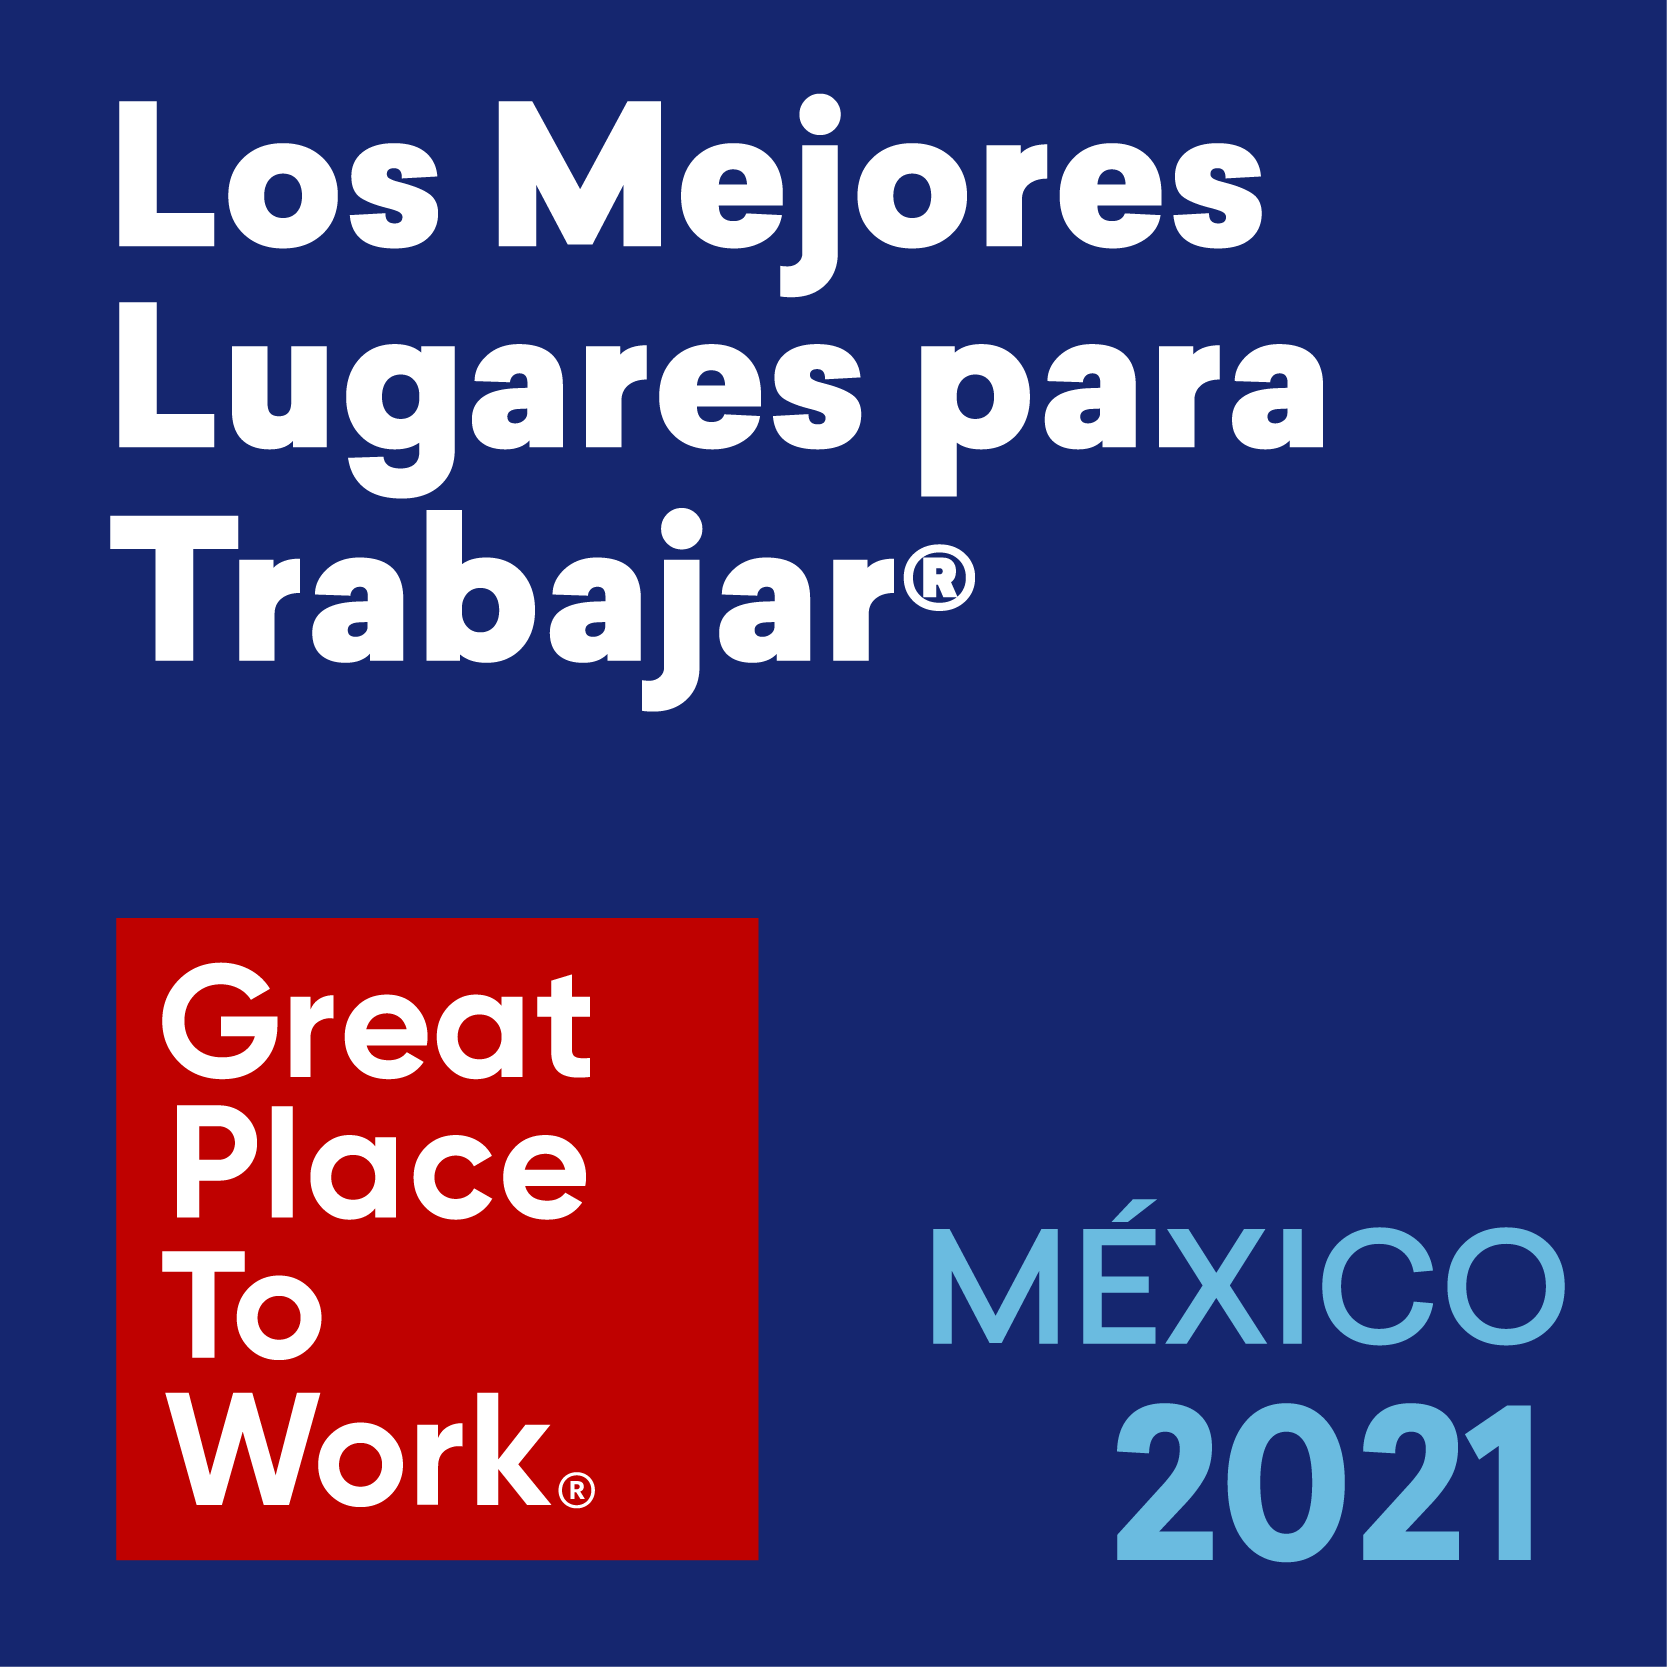 Los Mejores Lugares para Trabajar Regionales México 2021-Tiempos de